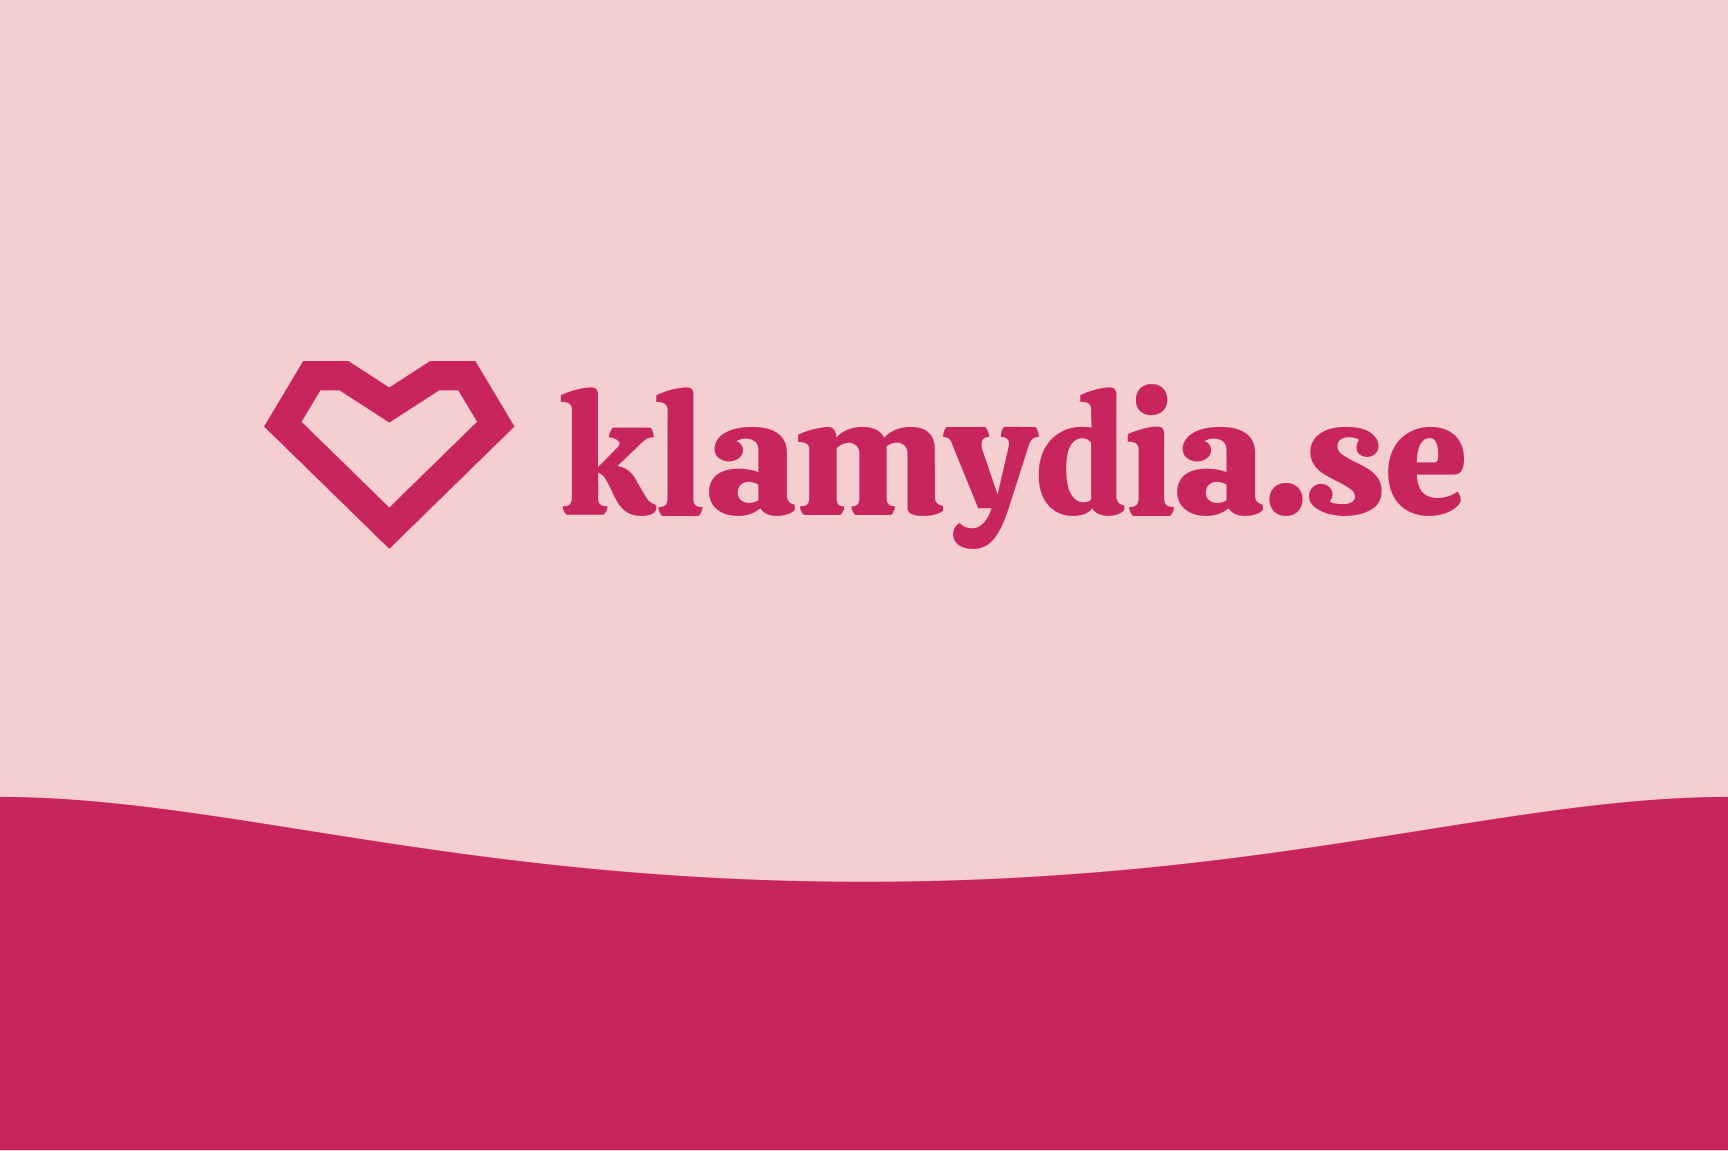 Klamydiatestning via klamydia.se